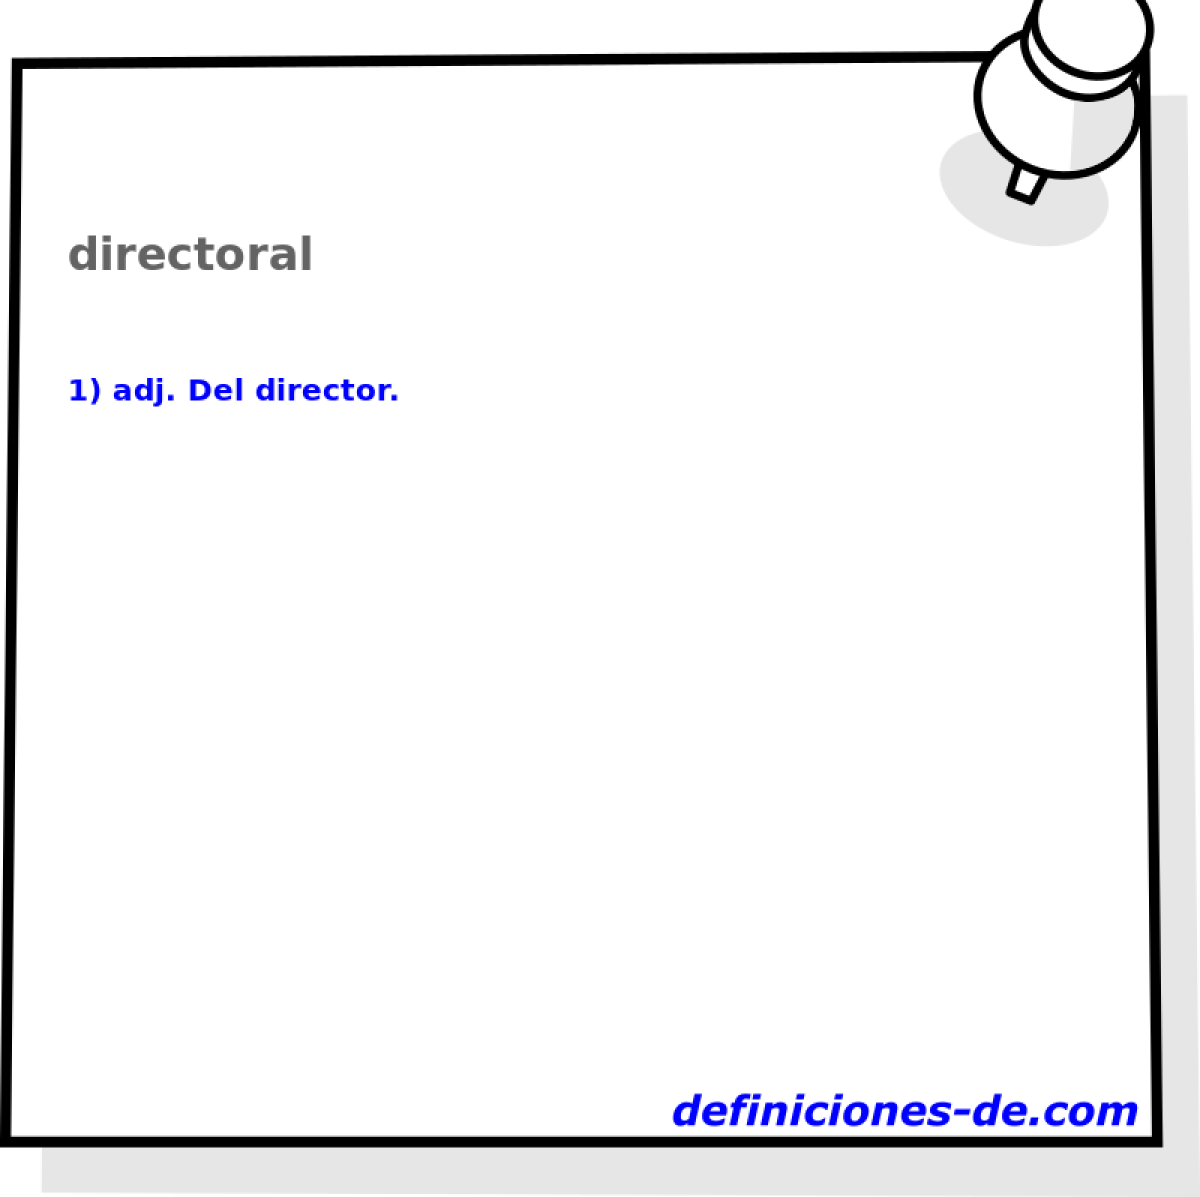 directoral 